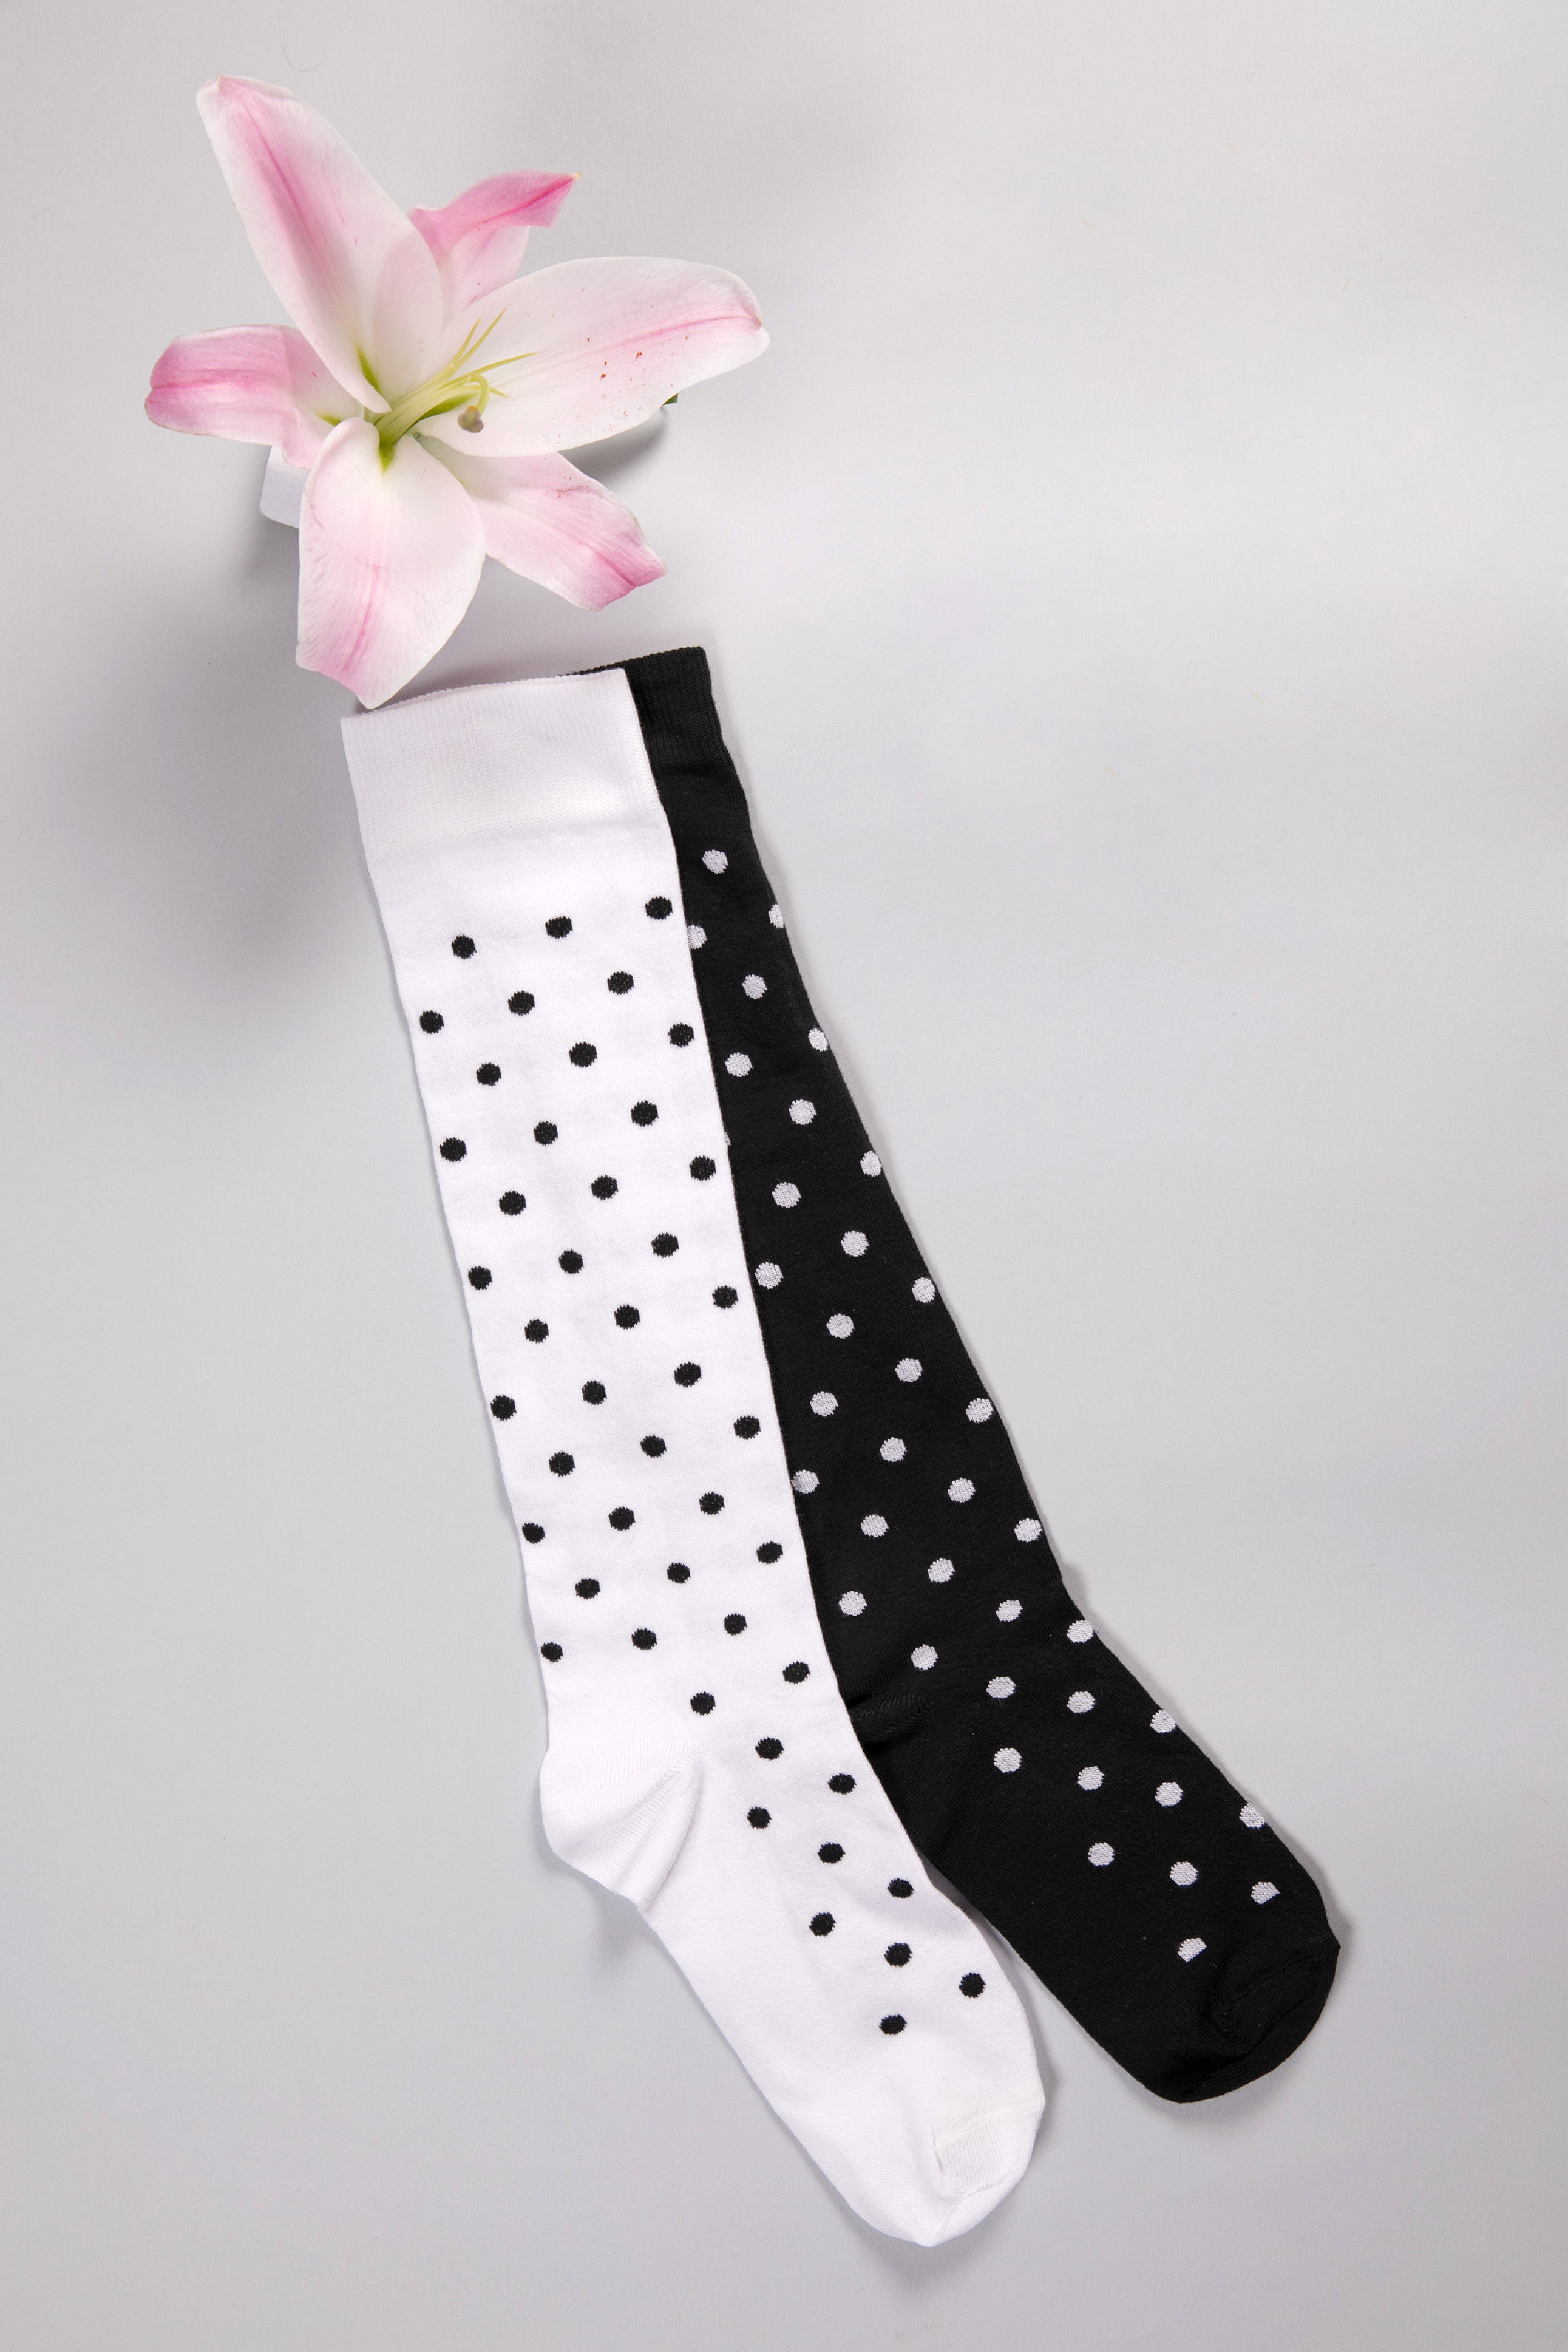 Polka Dot Socks in Black and White